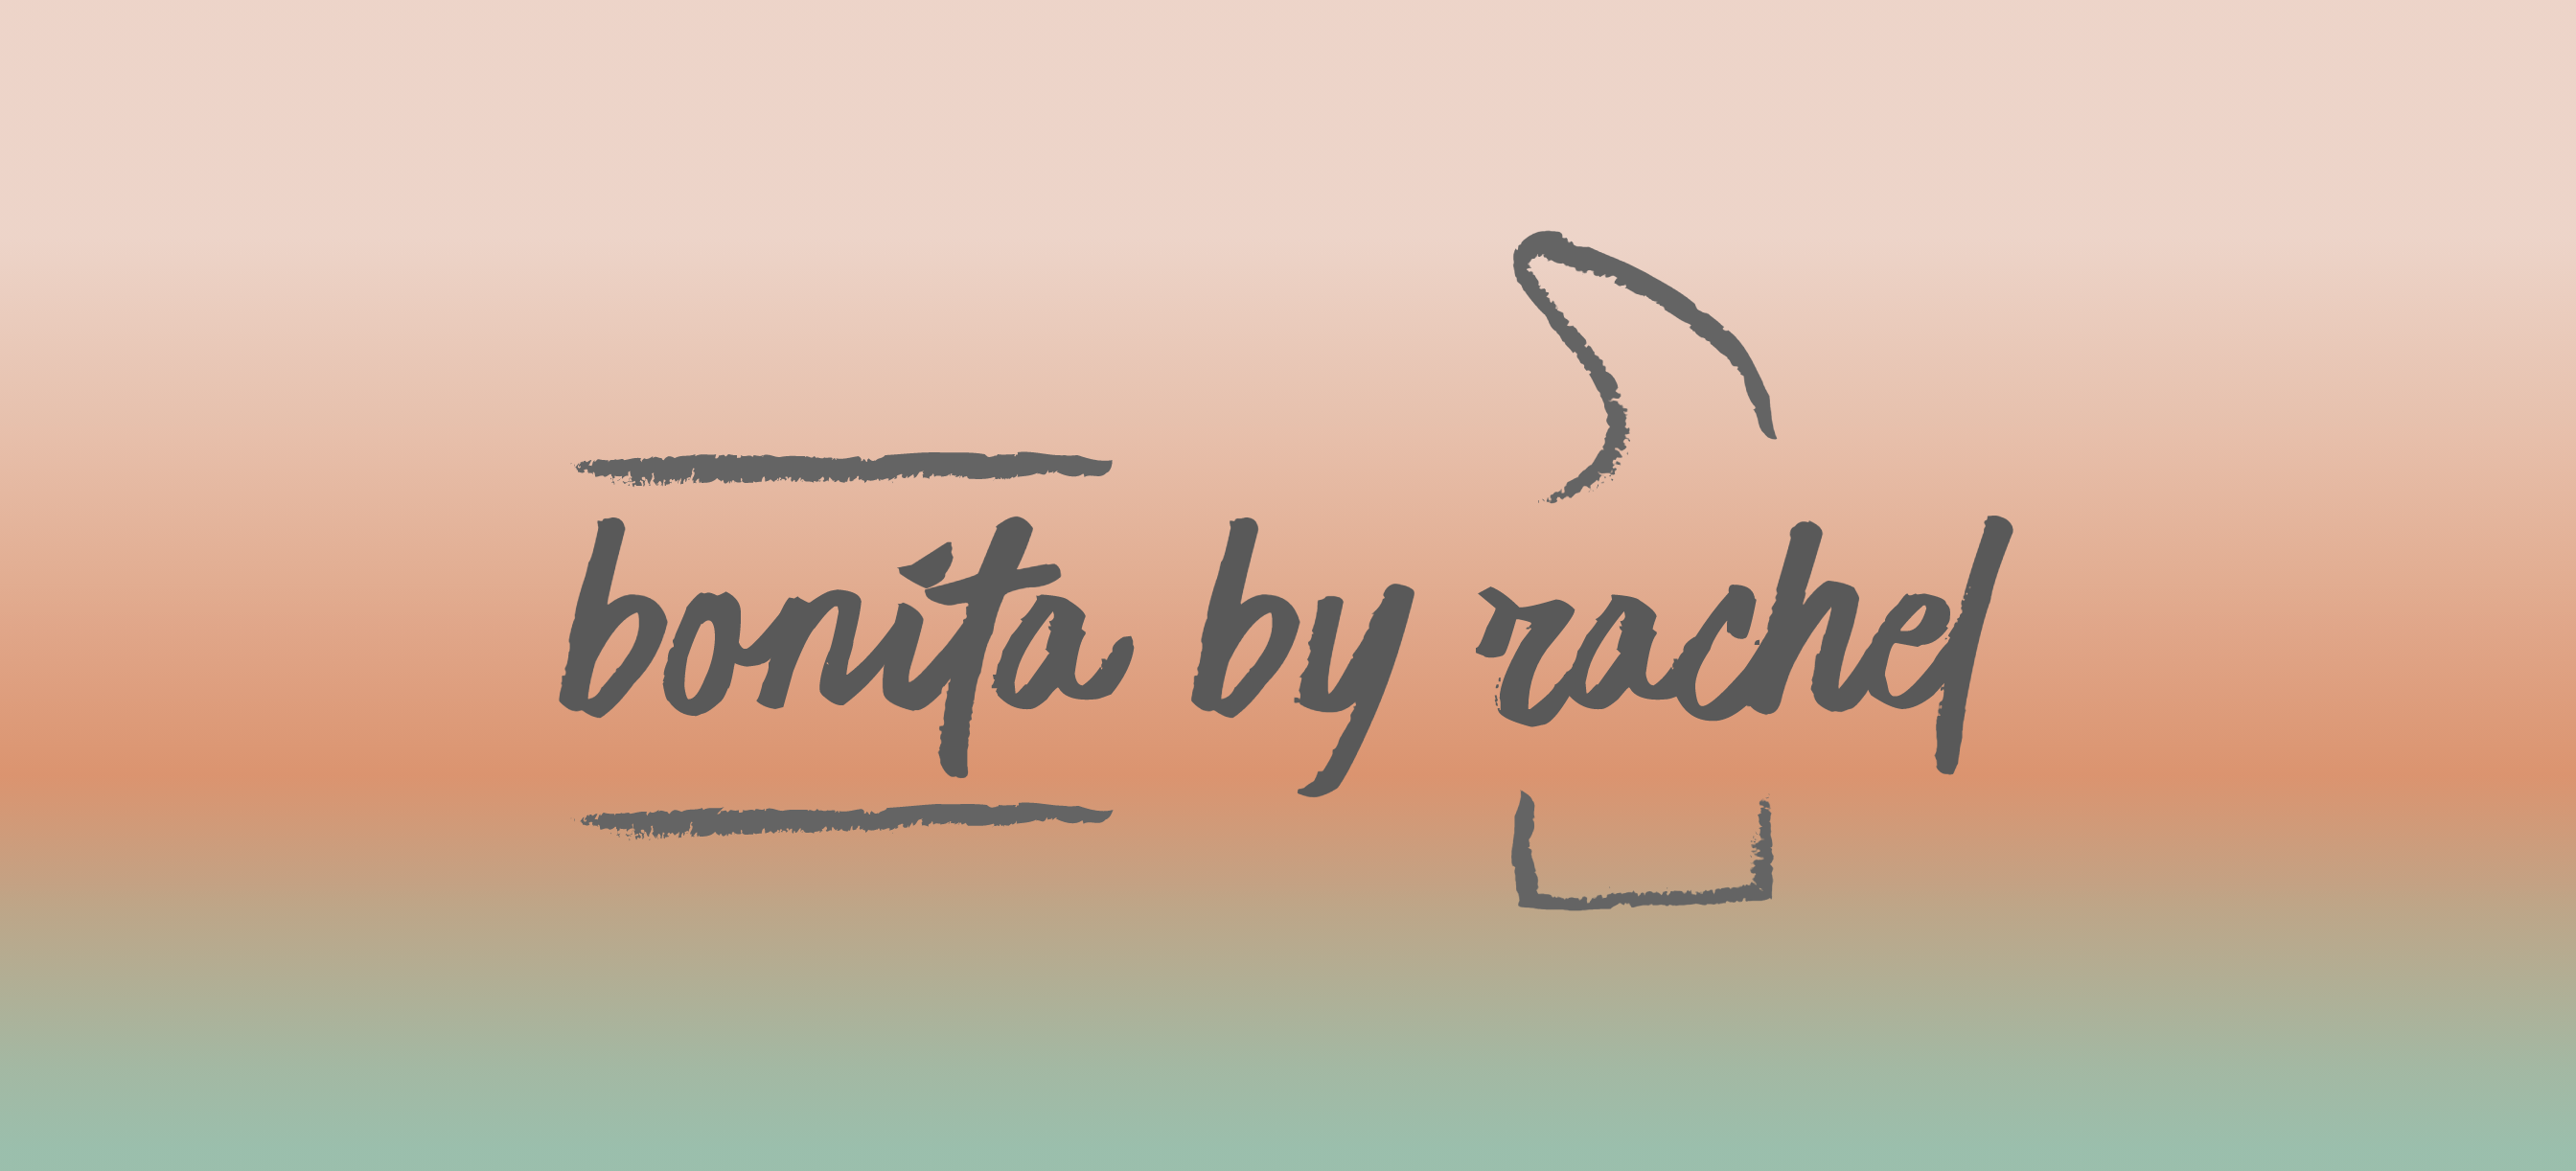 bonita by rachel